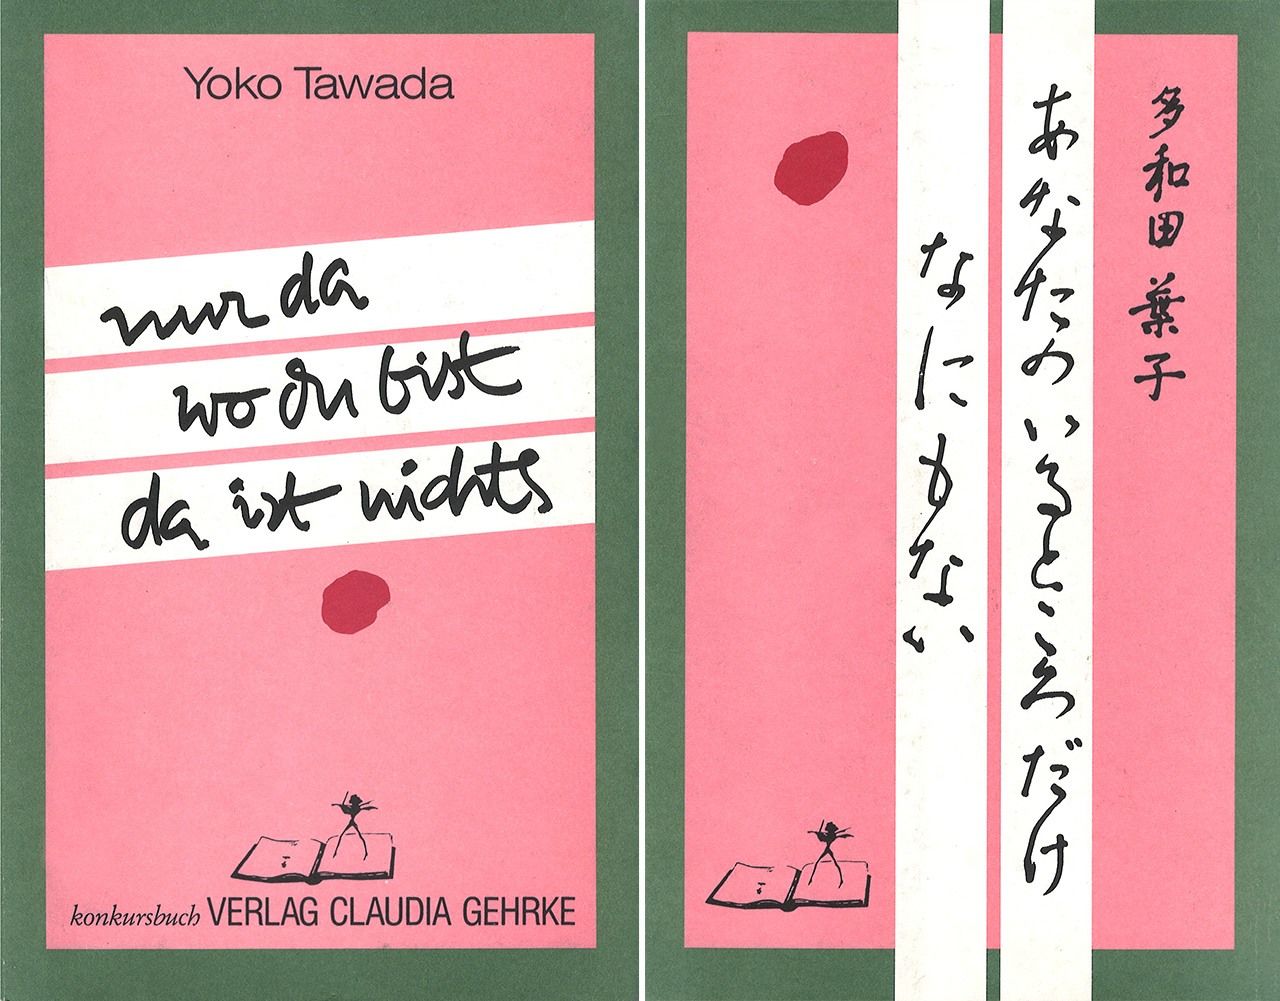 Portadas en alemán y japonés de Nur da wo du bist da ist nichts - Anata no iru tokoro dake nani mo nai (No hay nada solo donde estás tú), de 1987.